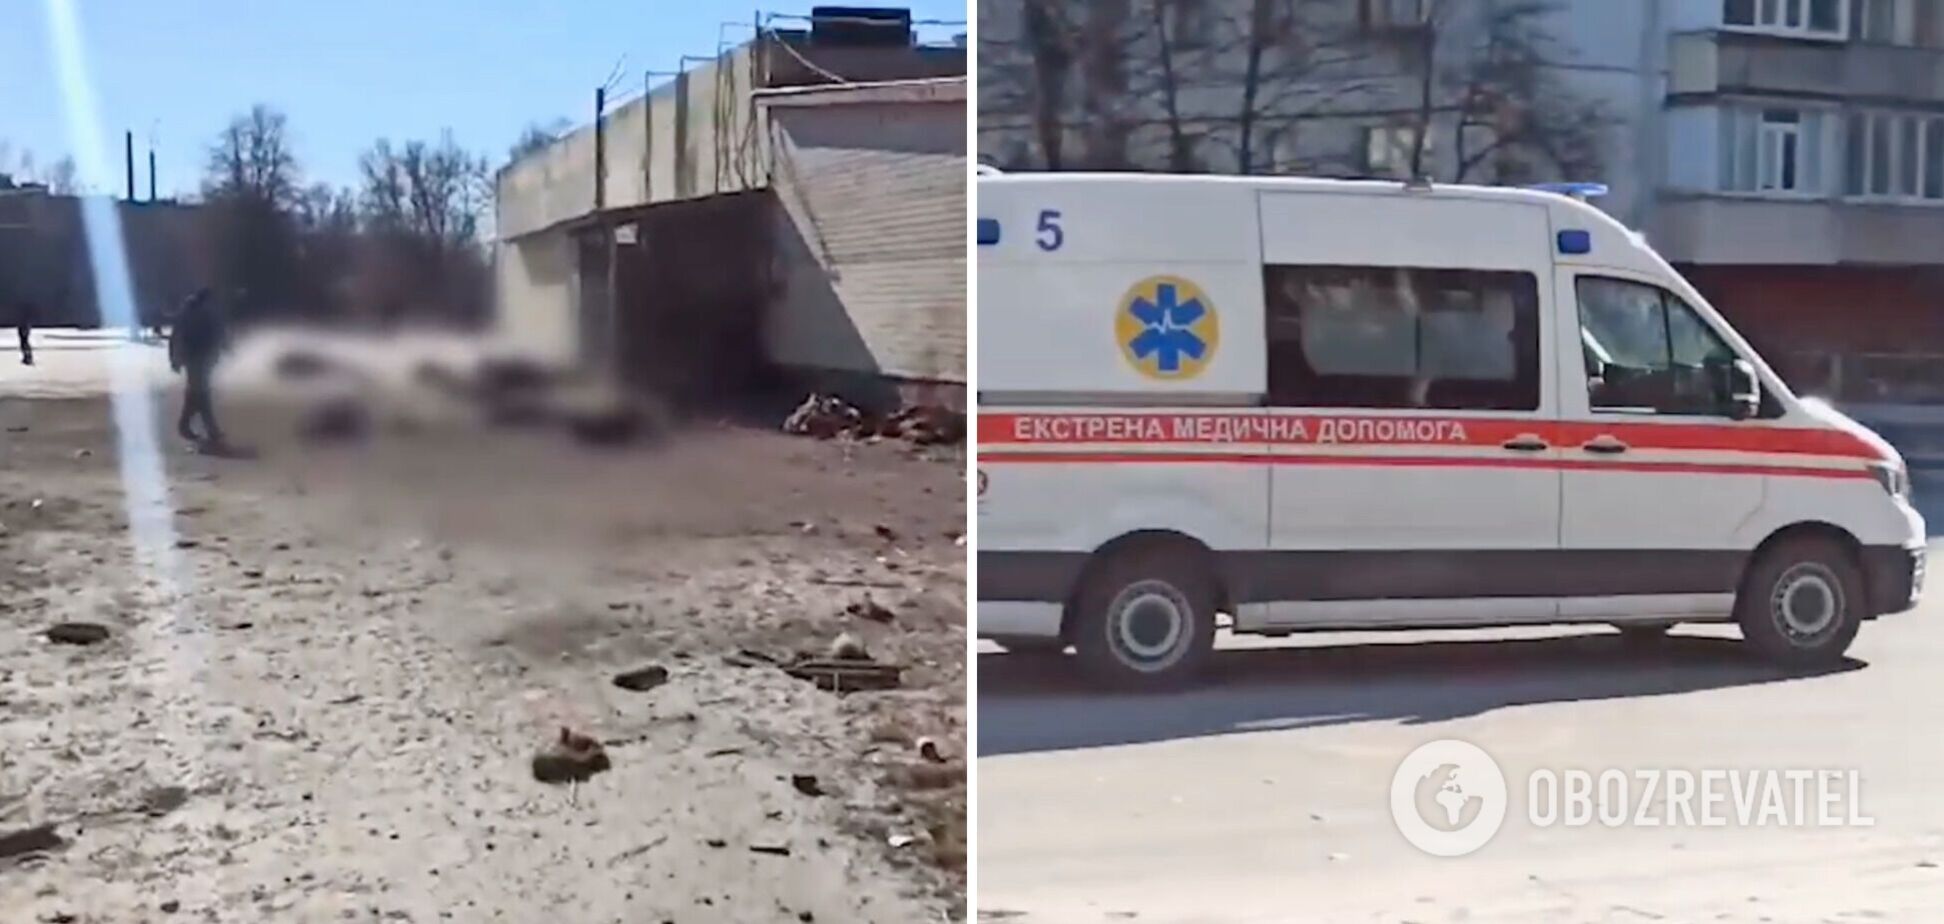 Количество погибших в результате обстрела оккупантами очереди за хлебом в Чернигове выросло: новые детали